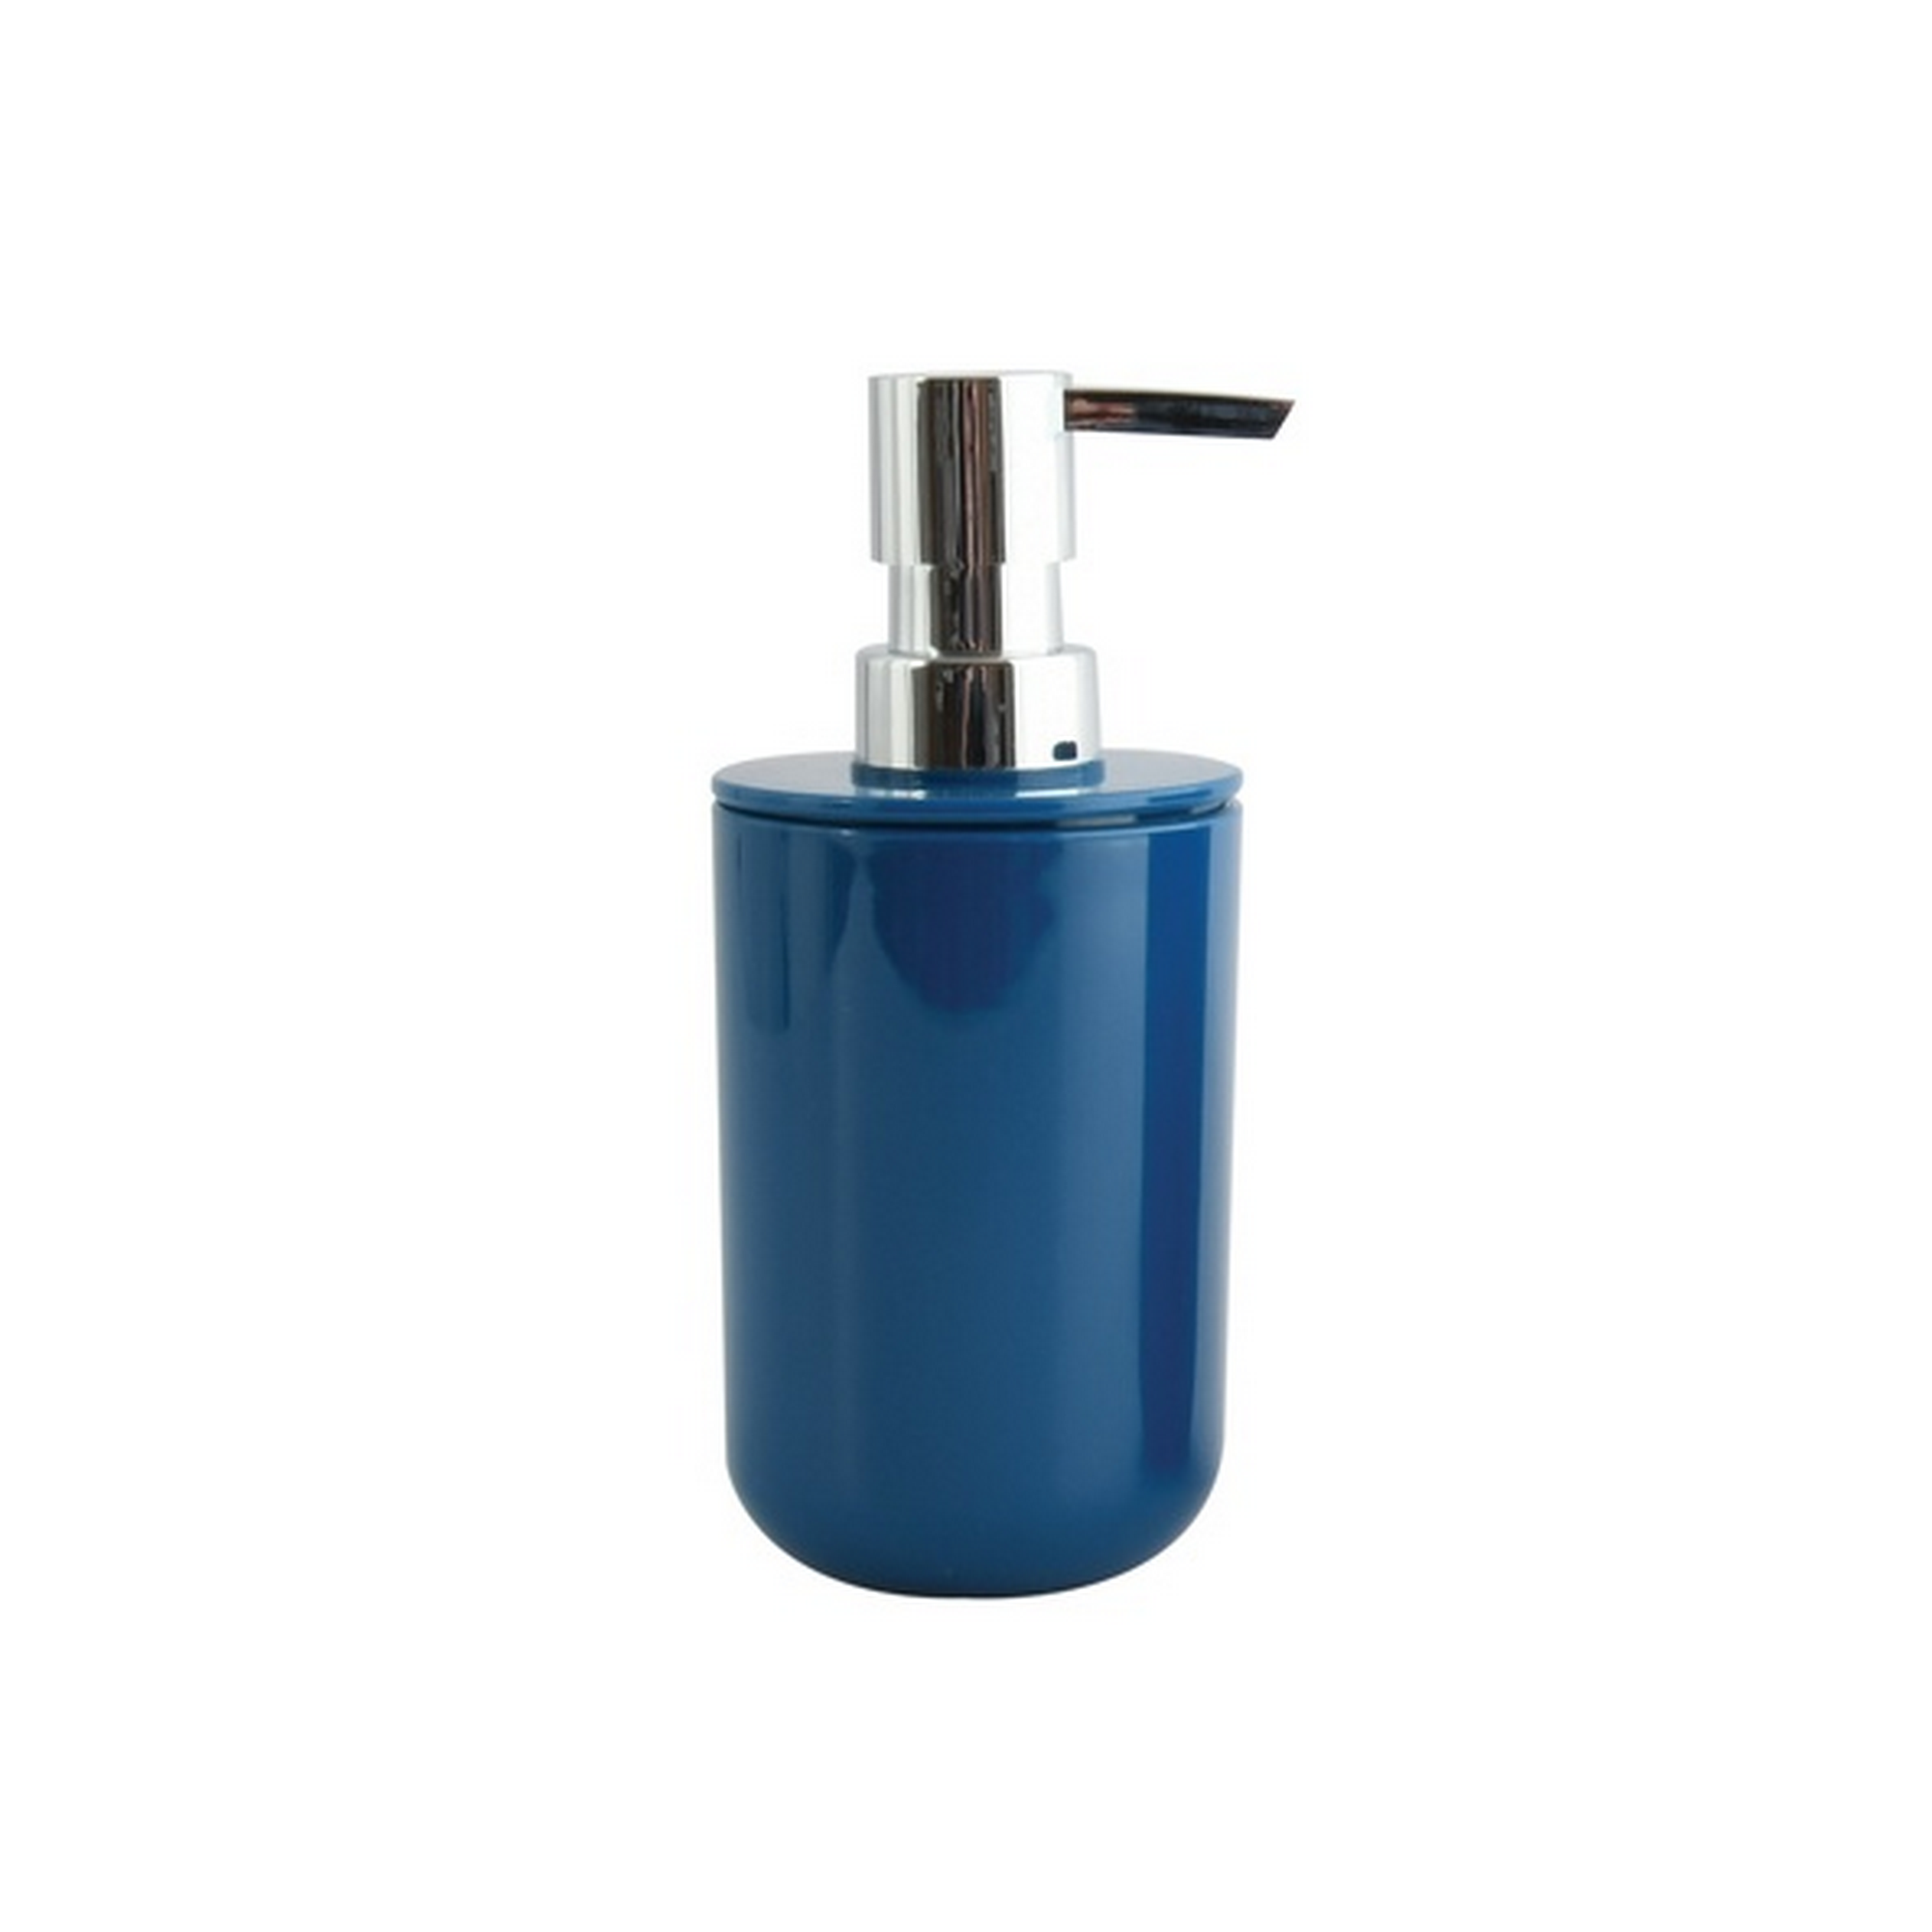 Seifenspender 'Inagua' Kunststoff dunkelblau 300 ml + product picture